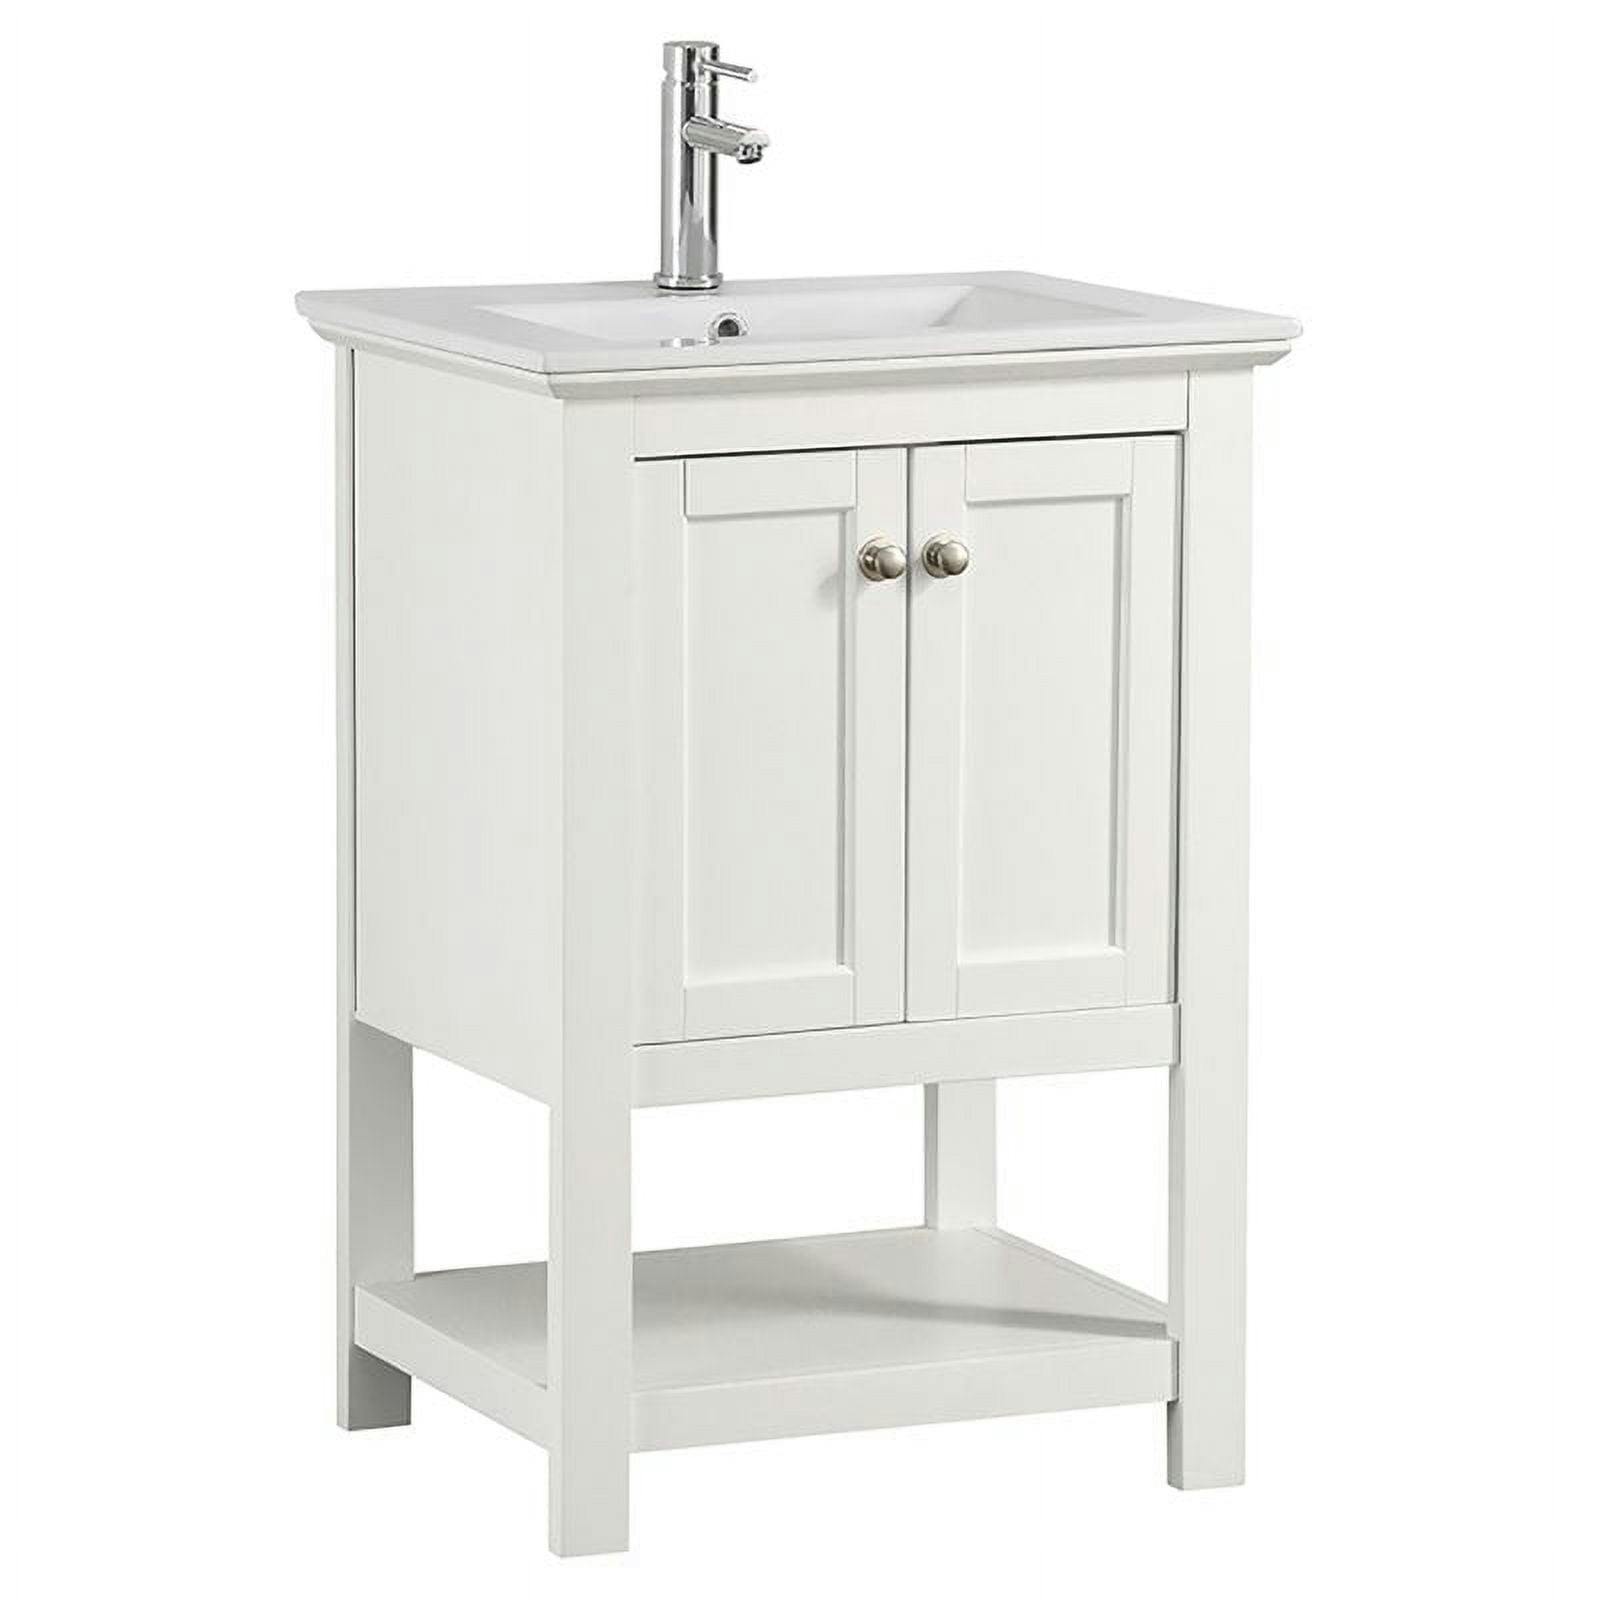 Elegant 24" White Solid Wood Freestanding Bathroom Vanity with Ceramic Sink